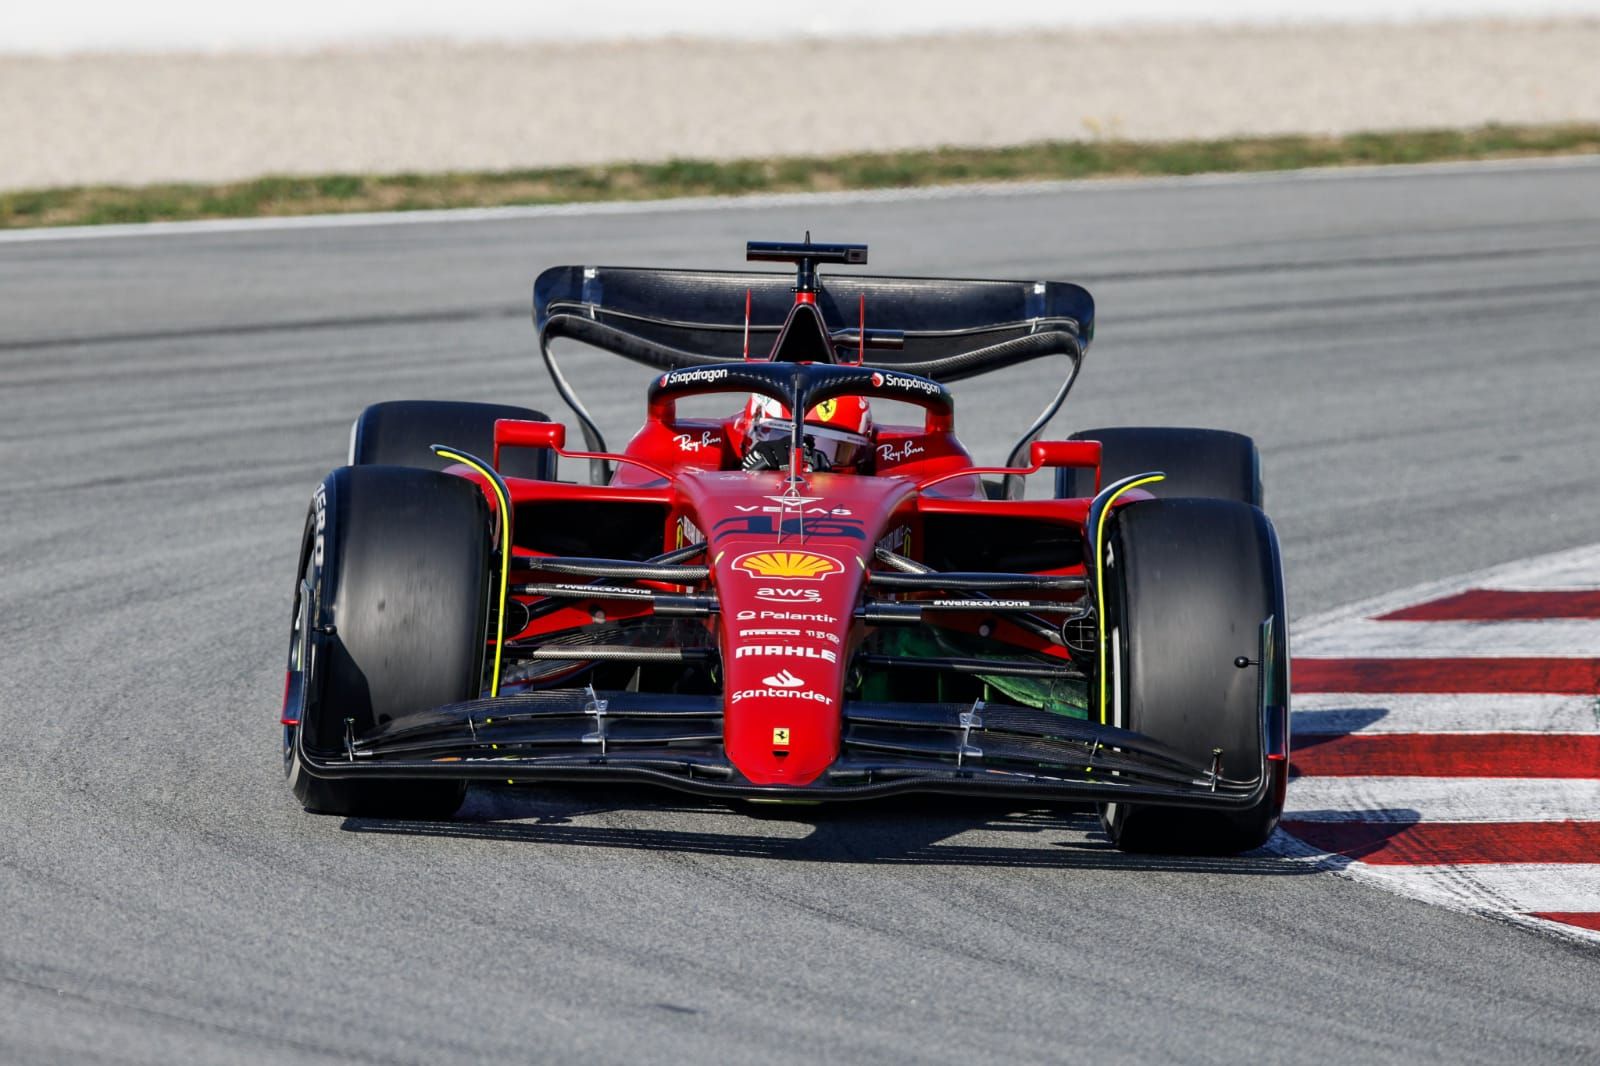 F1: como assistir aos treinos e ao Grande Prêmio da Espanha na